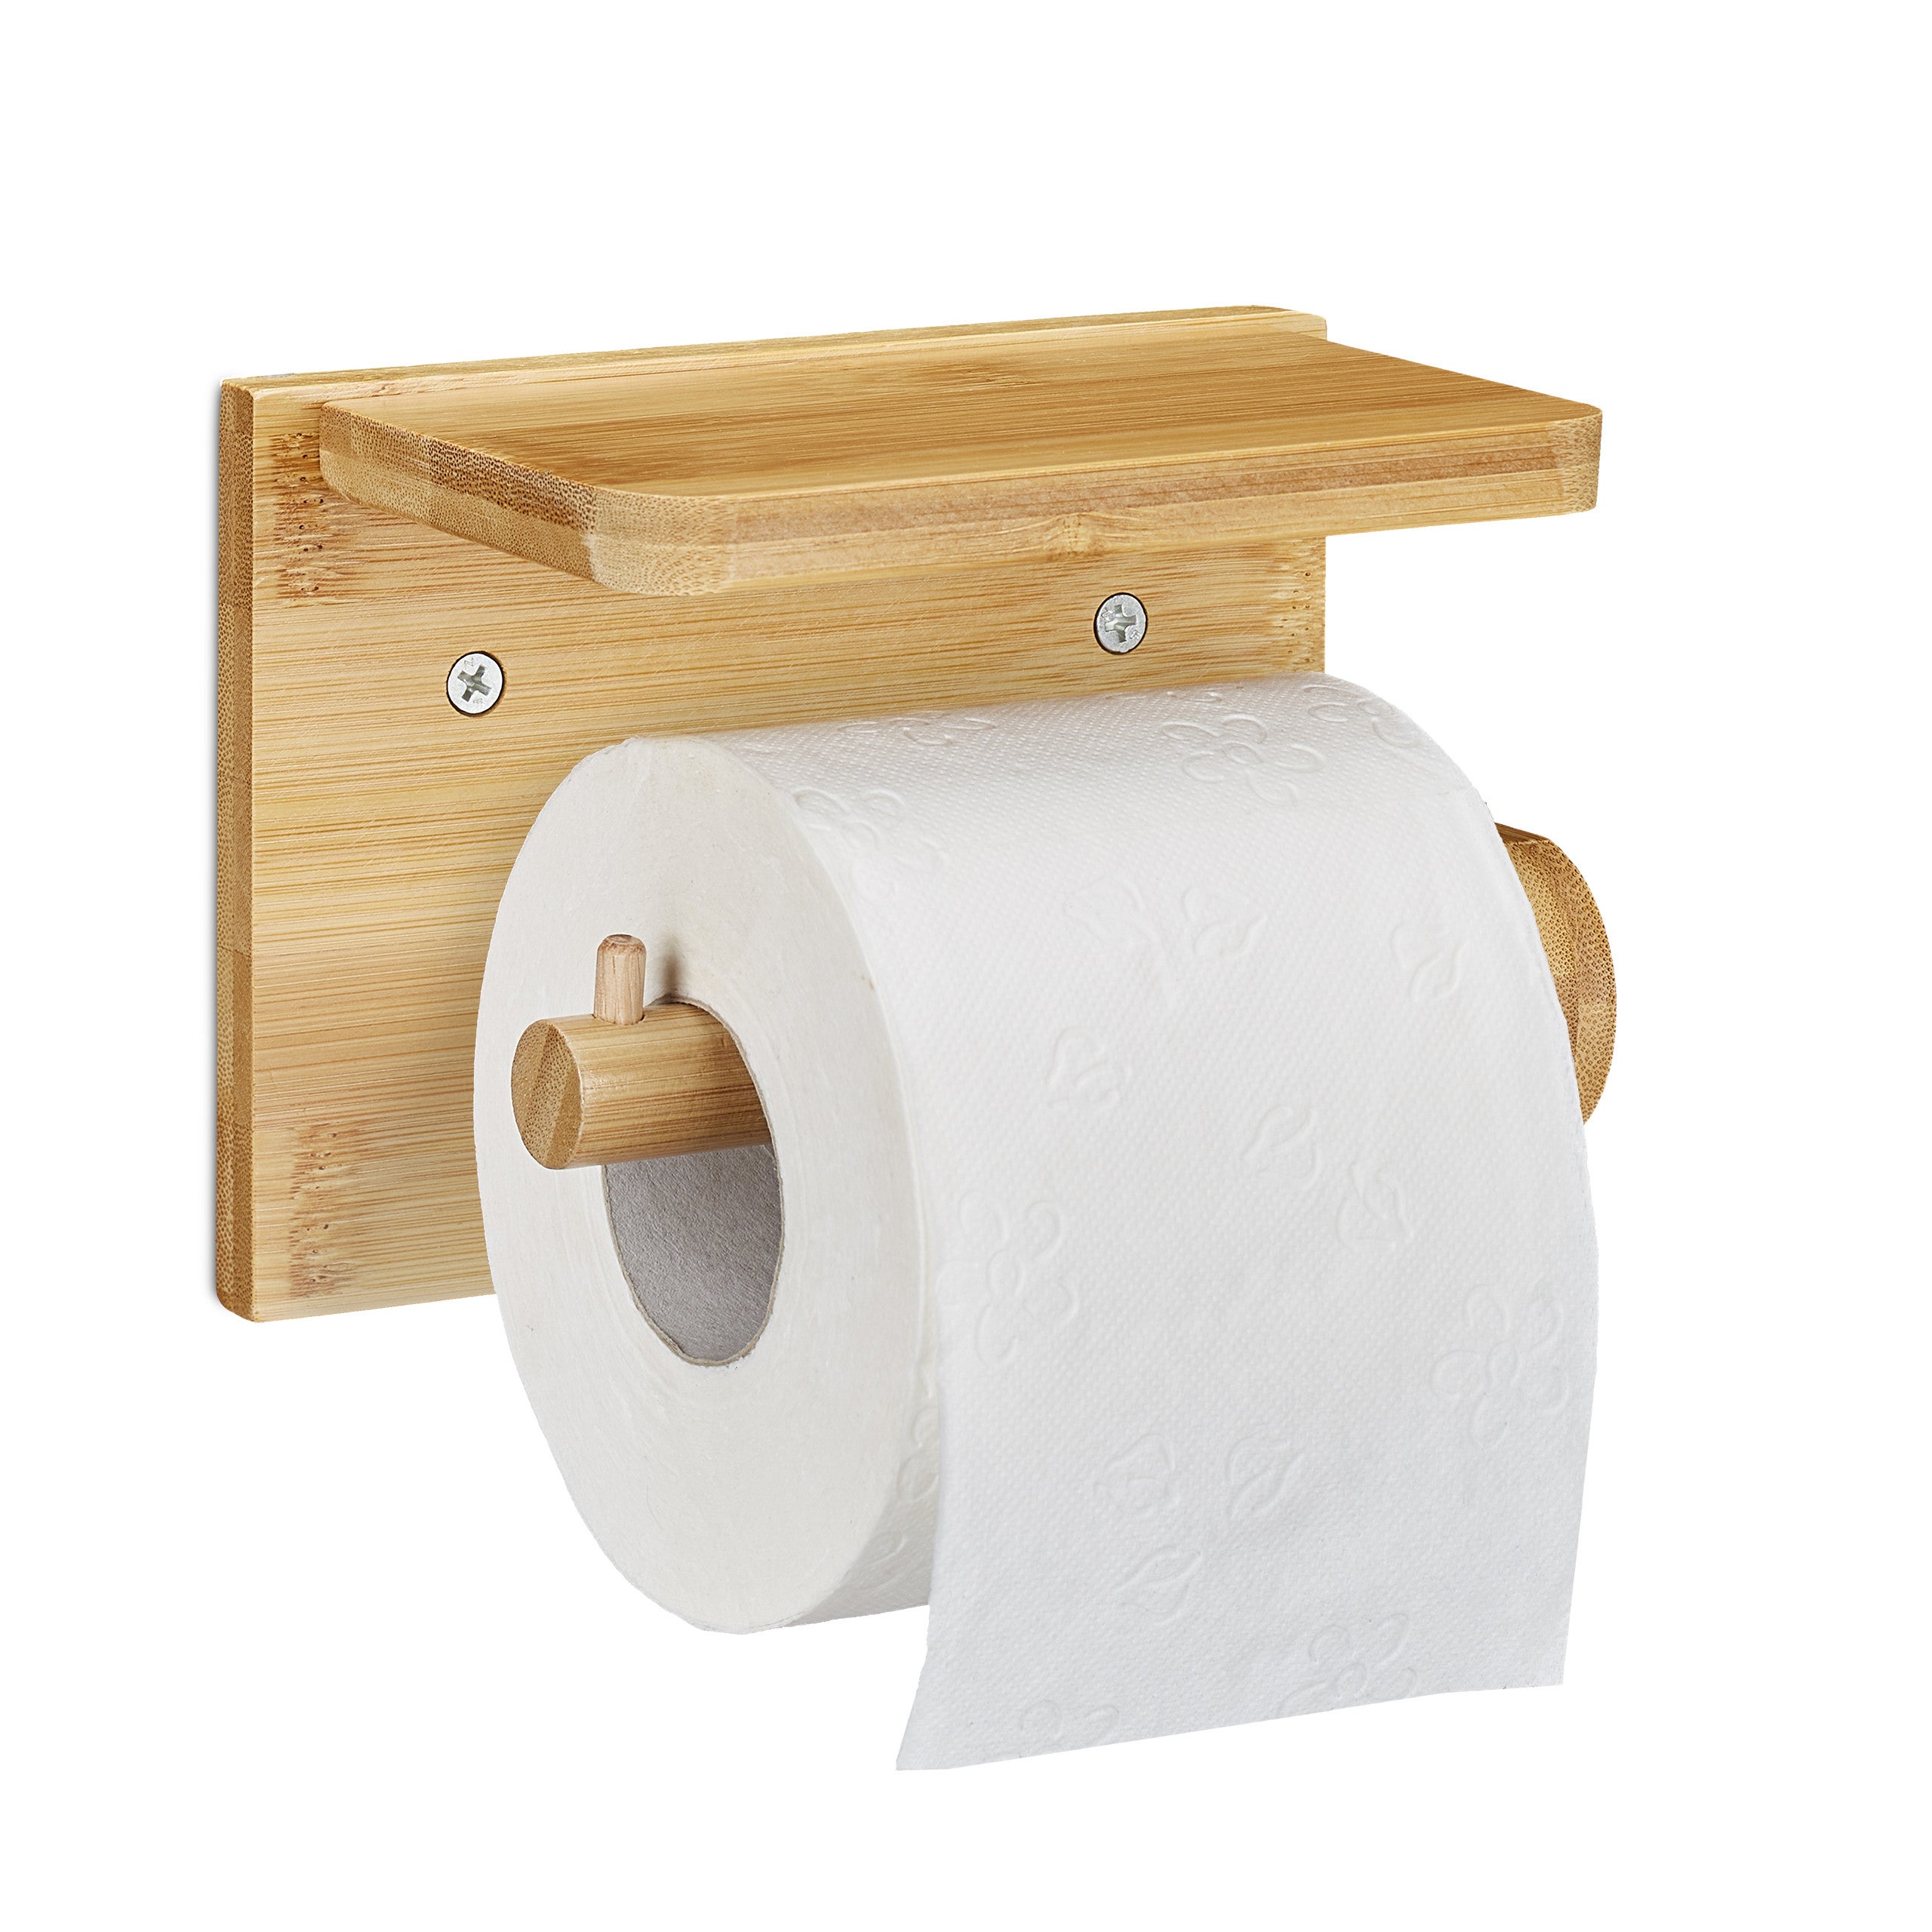 Rouleau de papier toilette €3